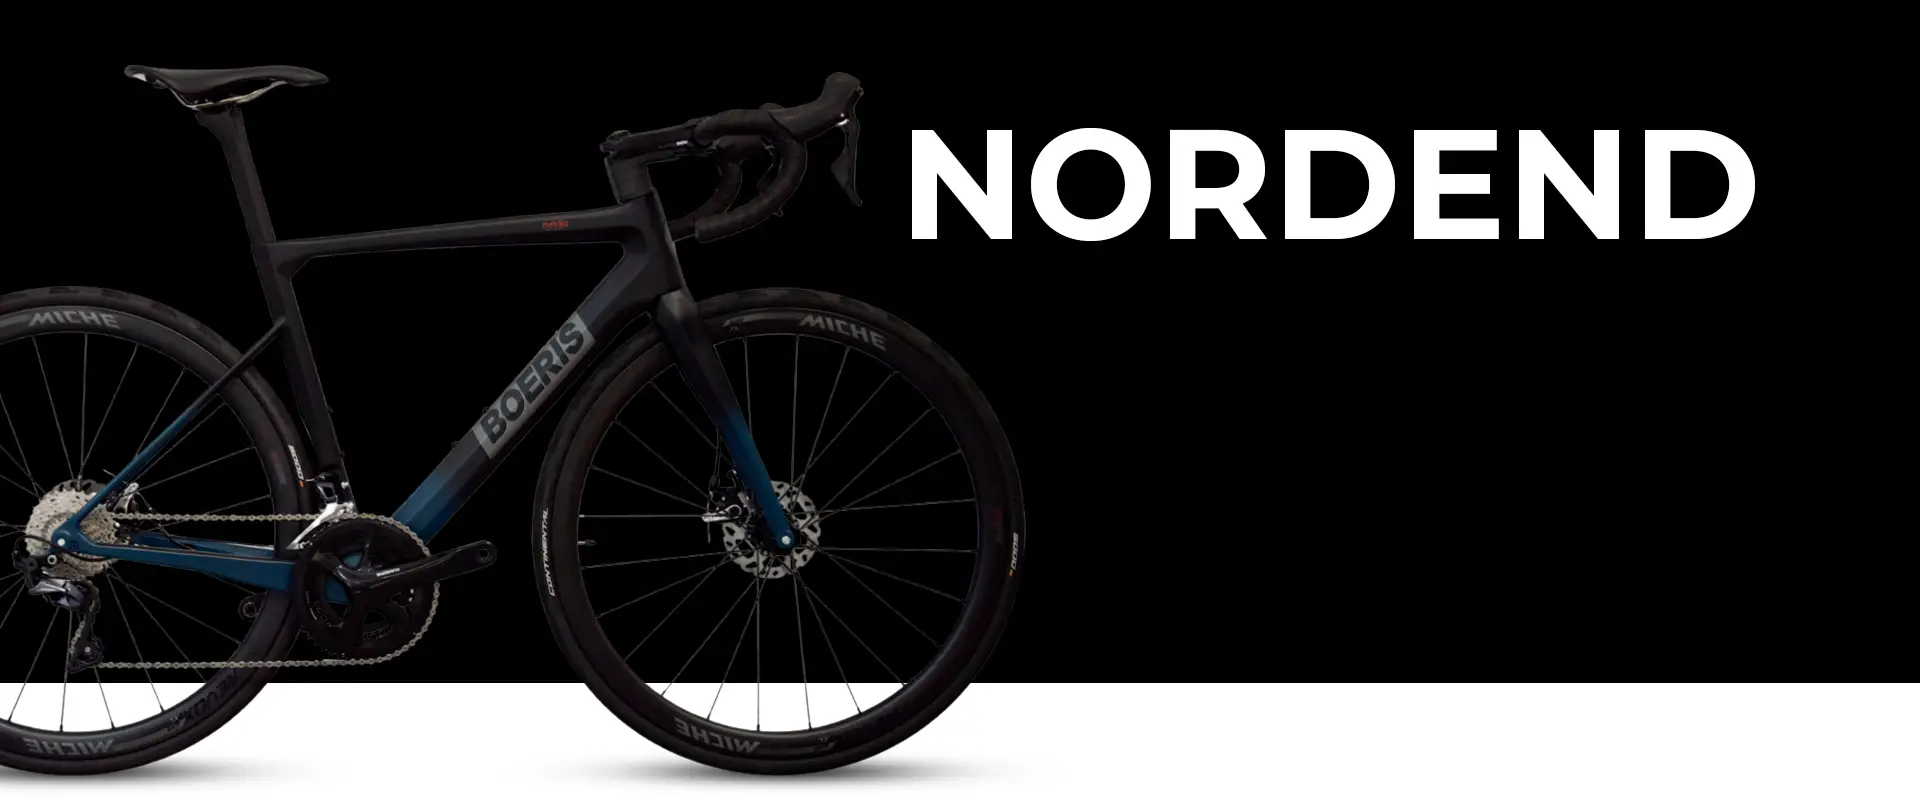 Bici da strada Nordend colore blu e nero Boeris Bikes Torino con sfondo nero